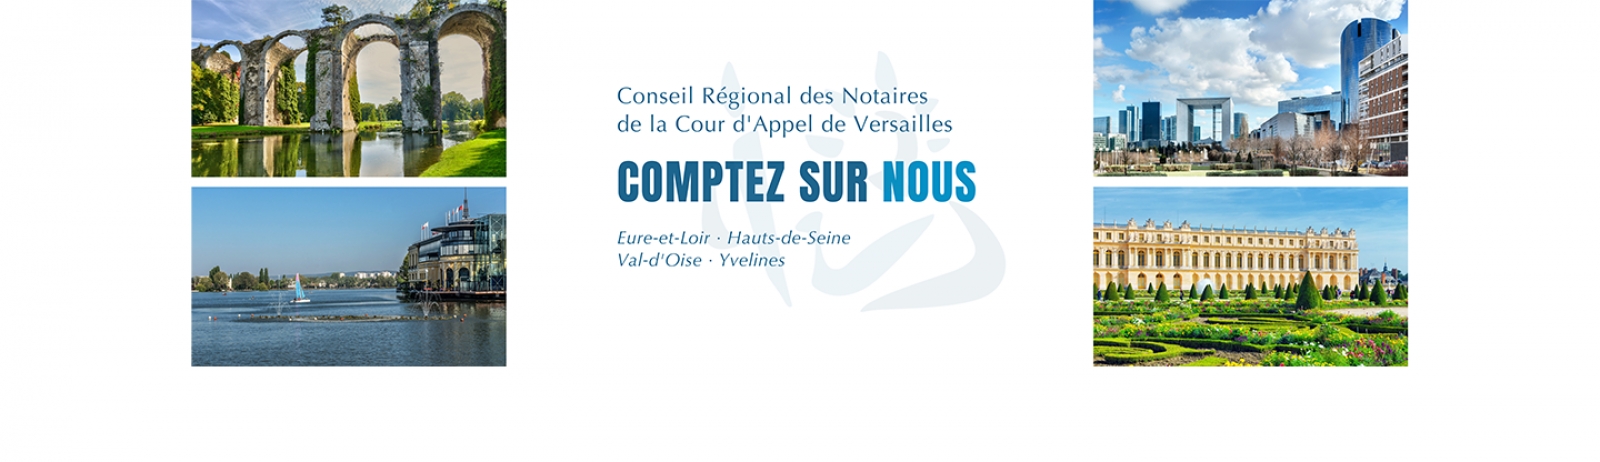 Conseil Régional des notaires de la Cour d'appel de Versailles